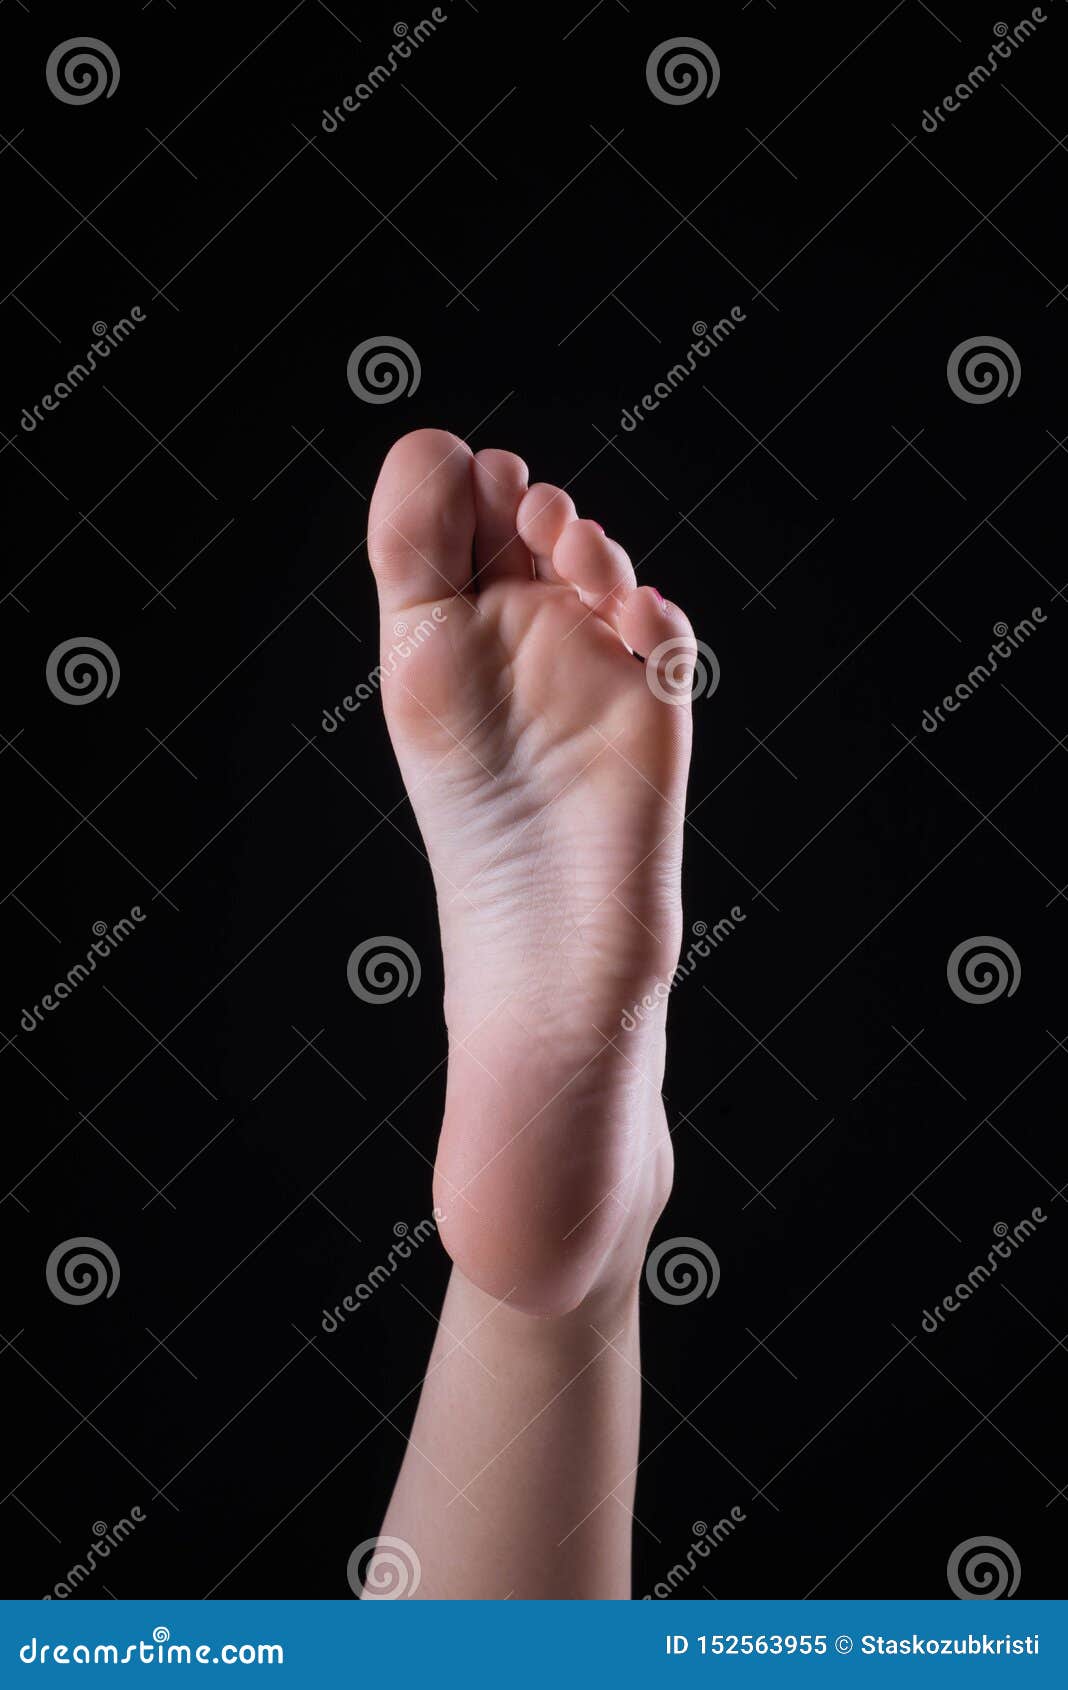 Beautiful Feet Soles